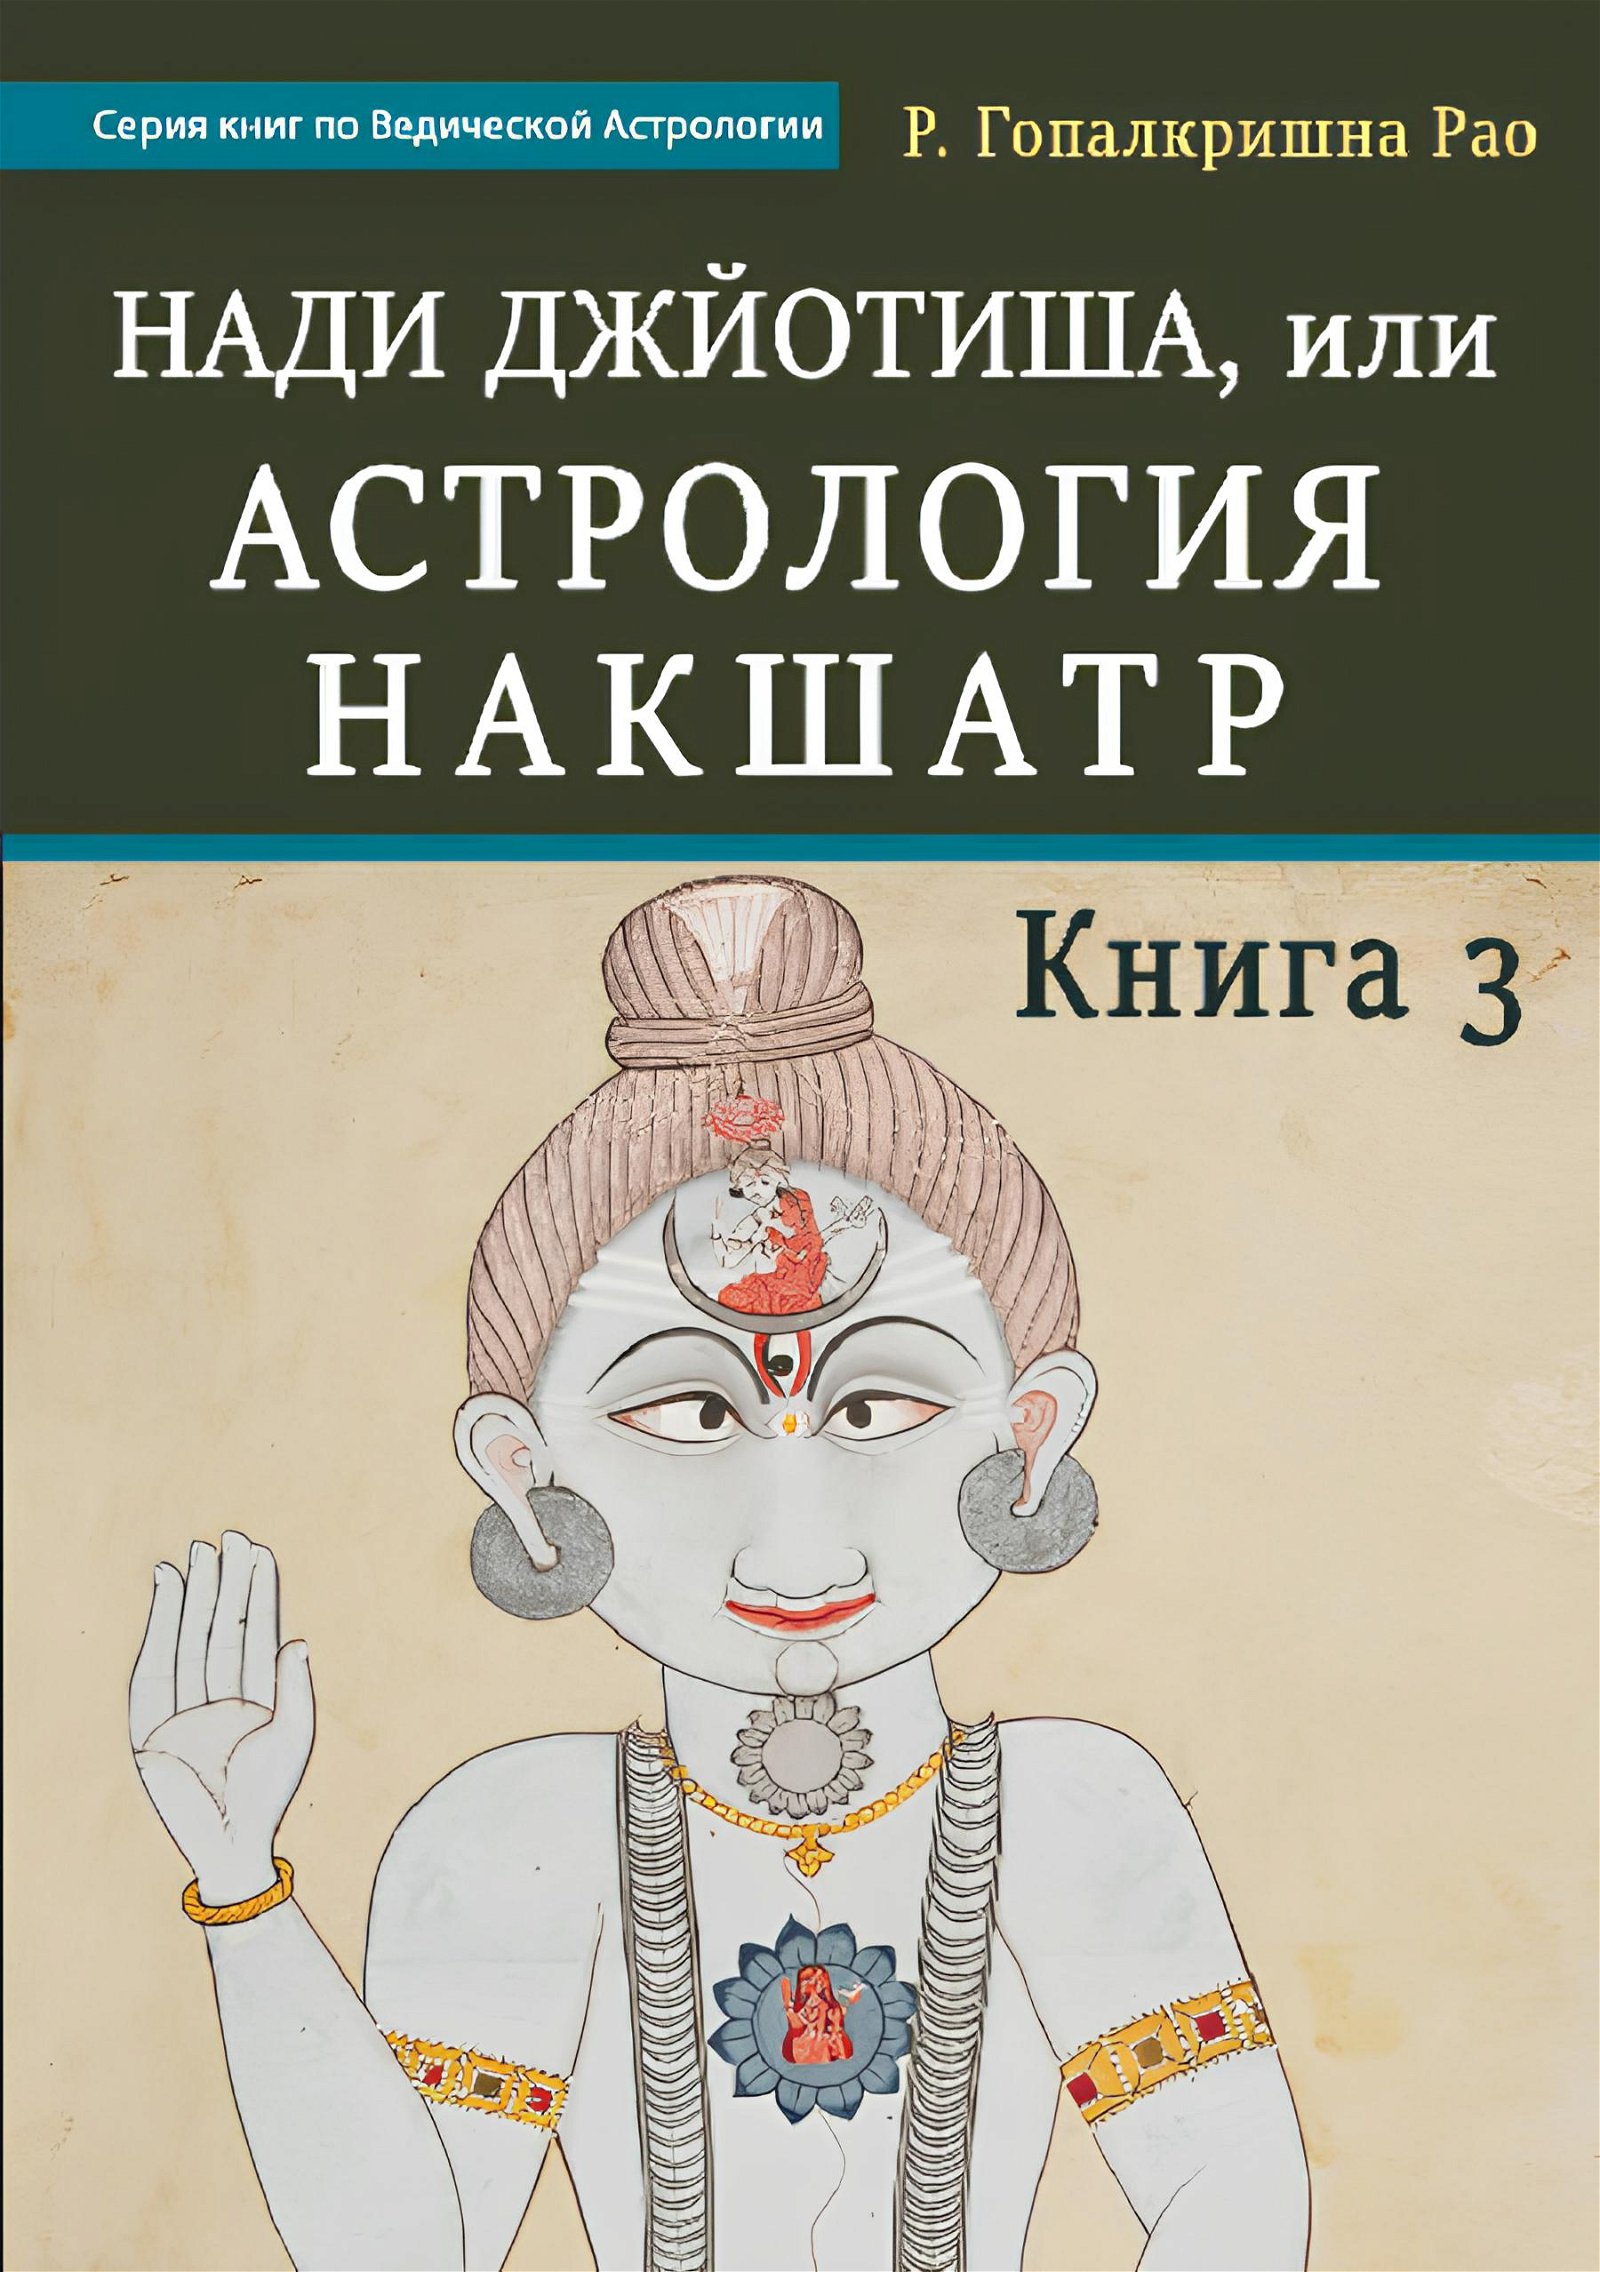 Купить книгу Нади Джйотиша, или Астрология Накшатр. Книга 3 Р. Гопалкришна Рао (Мина) в интернет-магазине Ариаварта